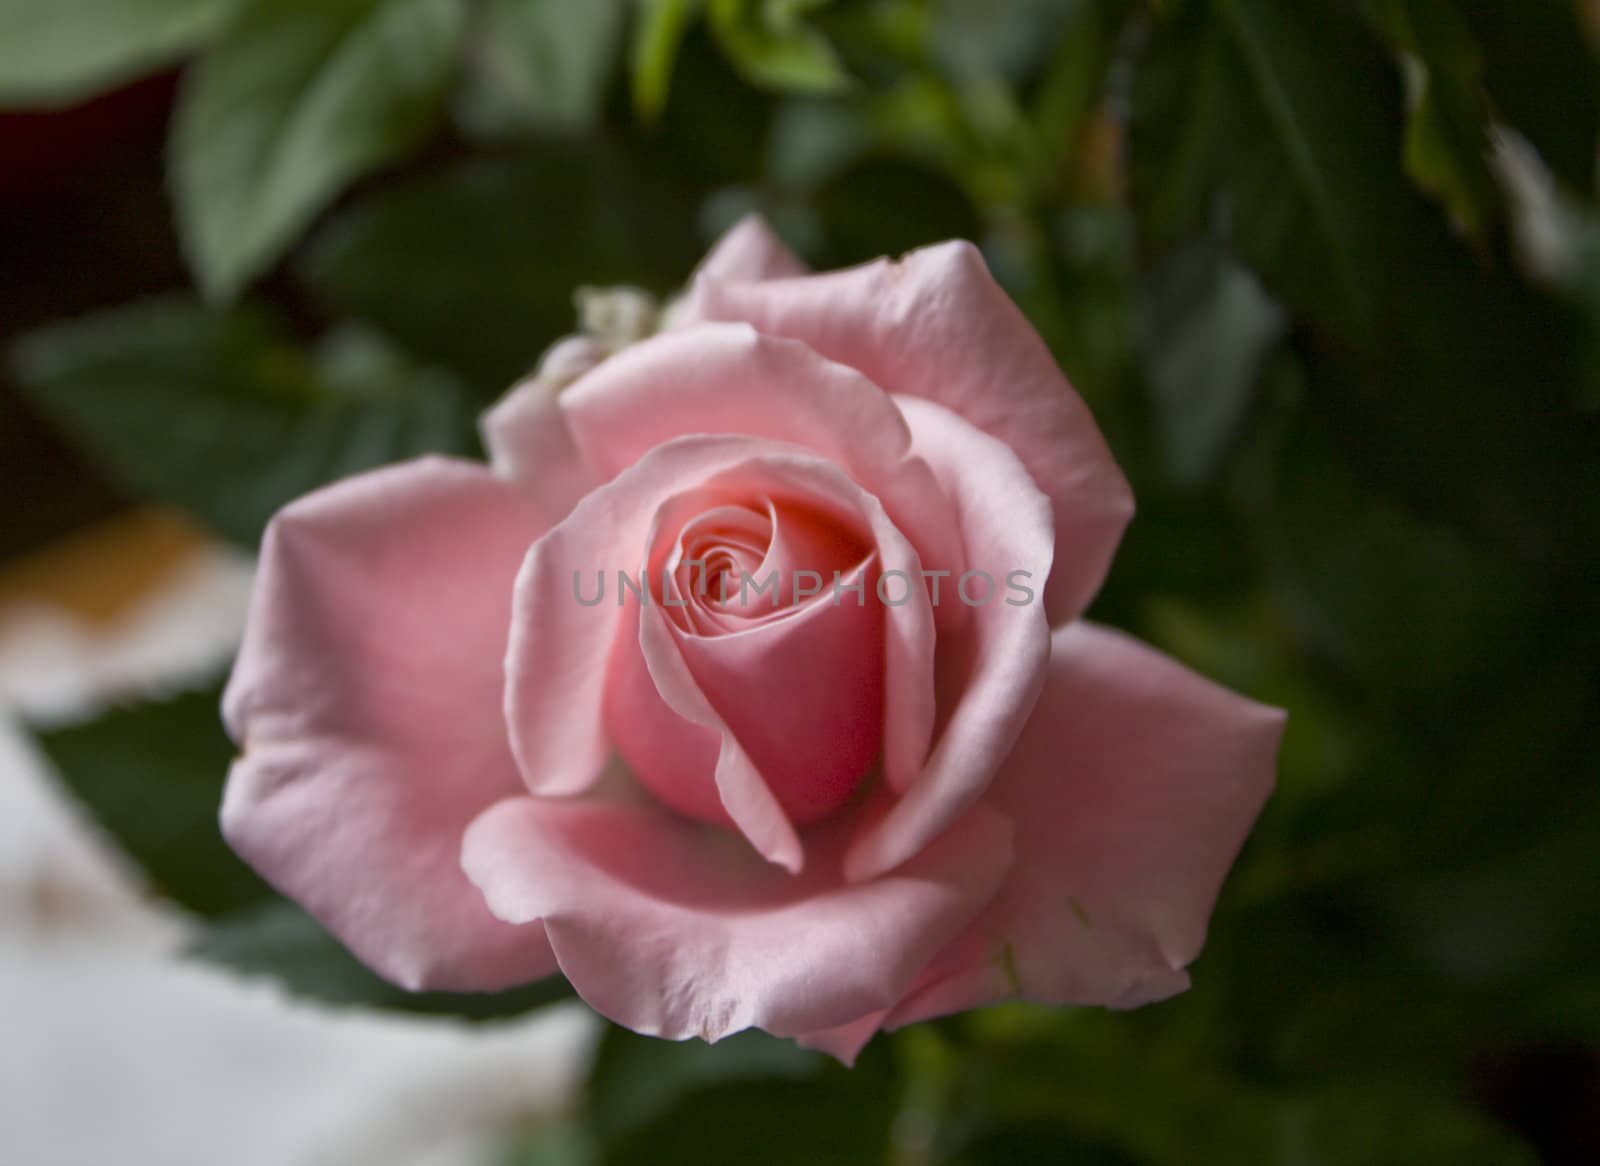 Pink rose bud by groomee